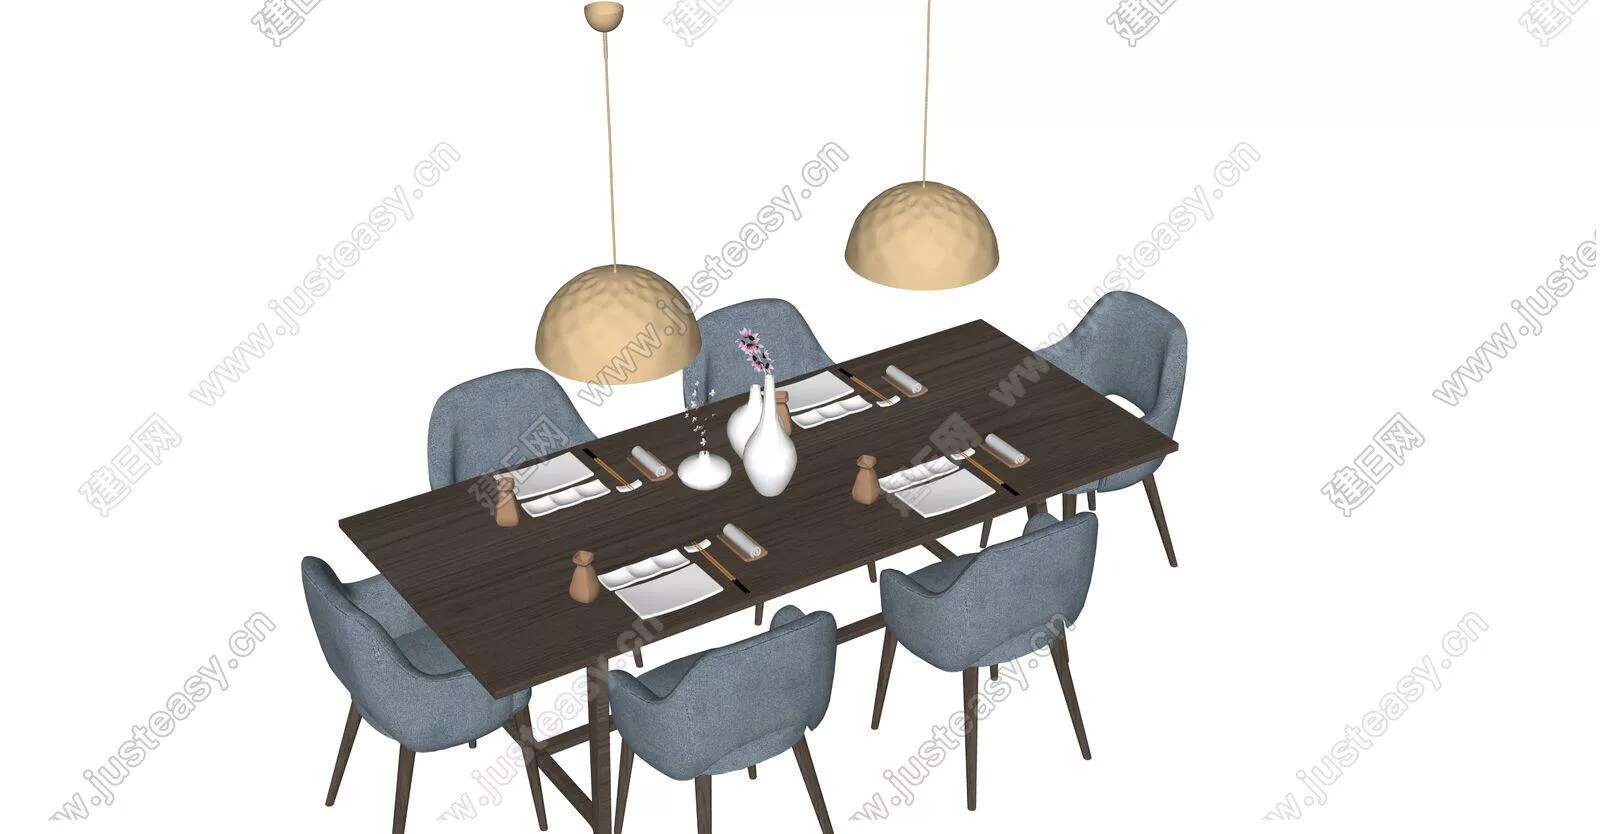 MODERN DINING TABLE SET - SKETCHUP 3D MODEL - ENSCAPE - 111624481